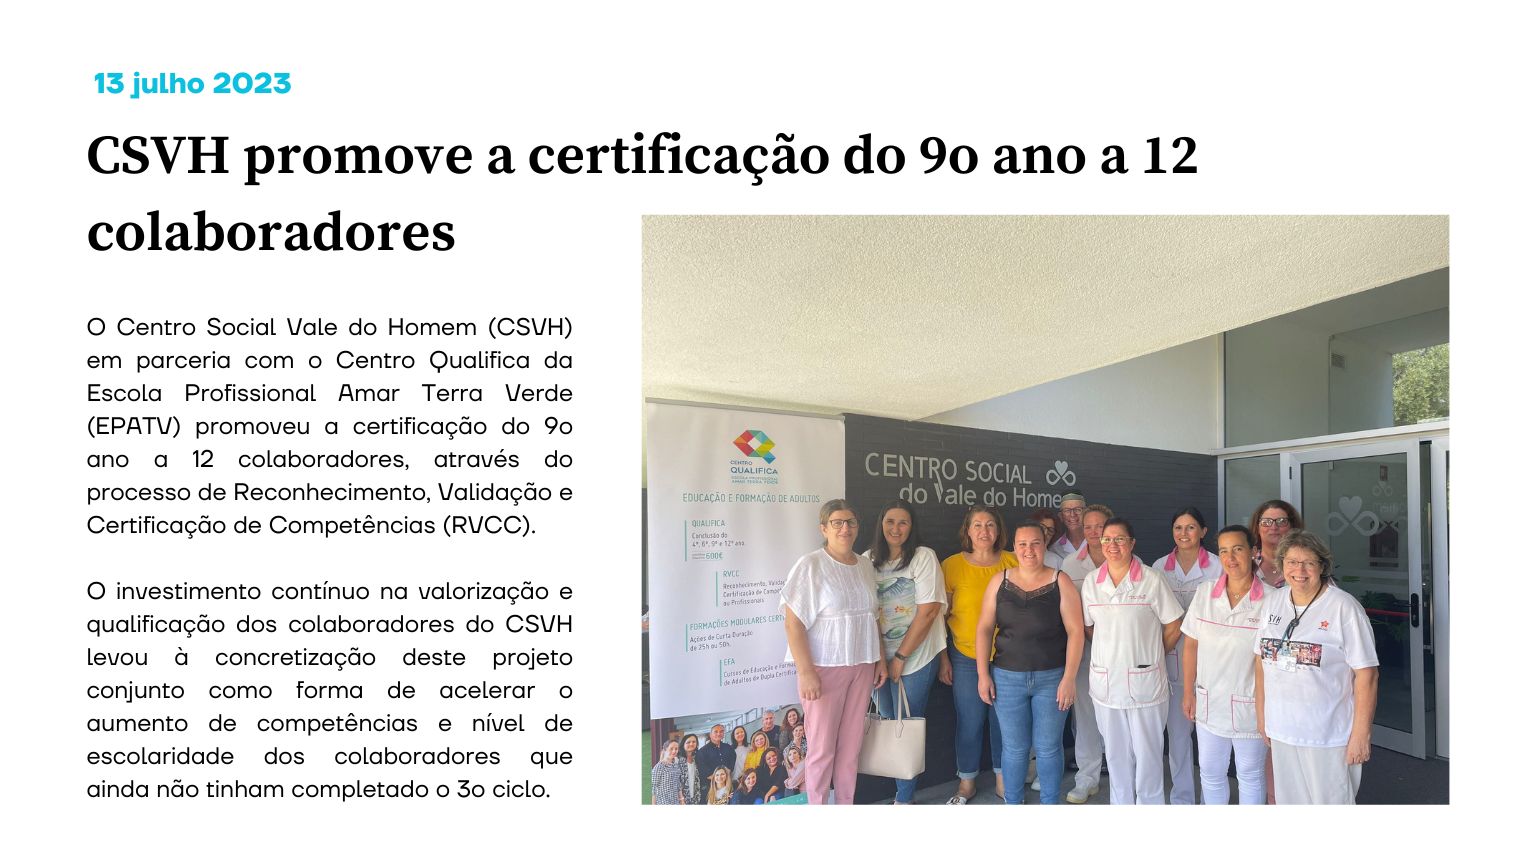 CSVH promove a certificação do 9o ano a 12 colaboradores